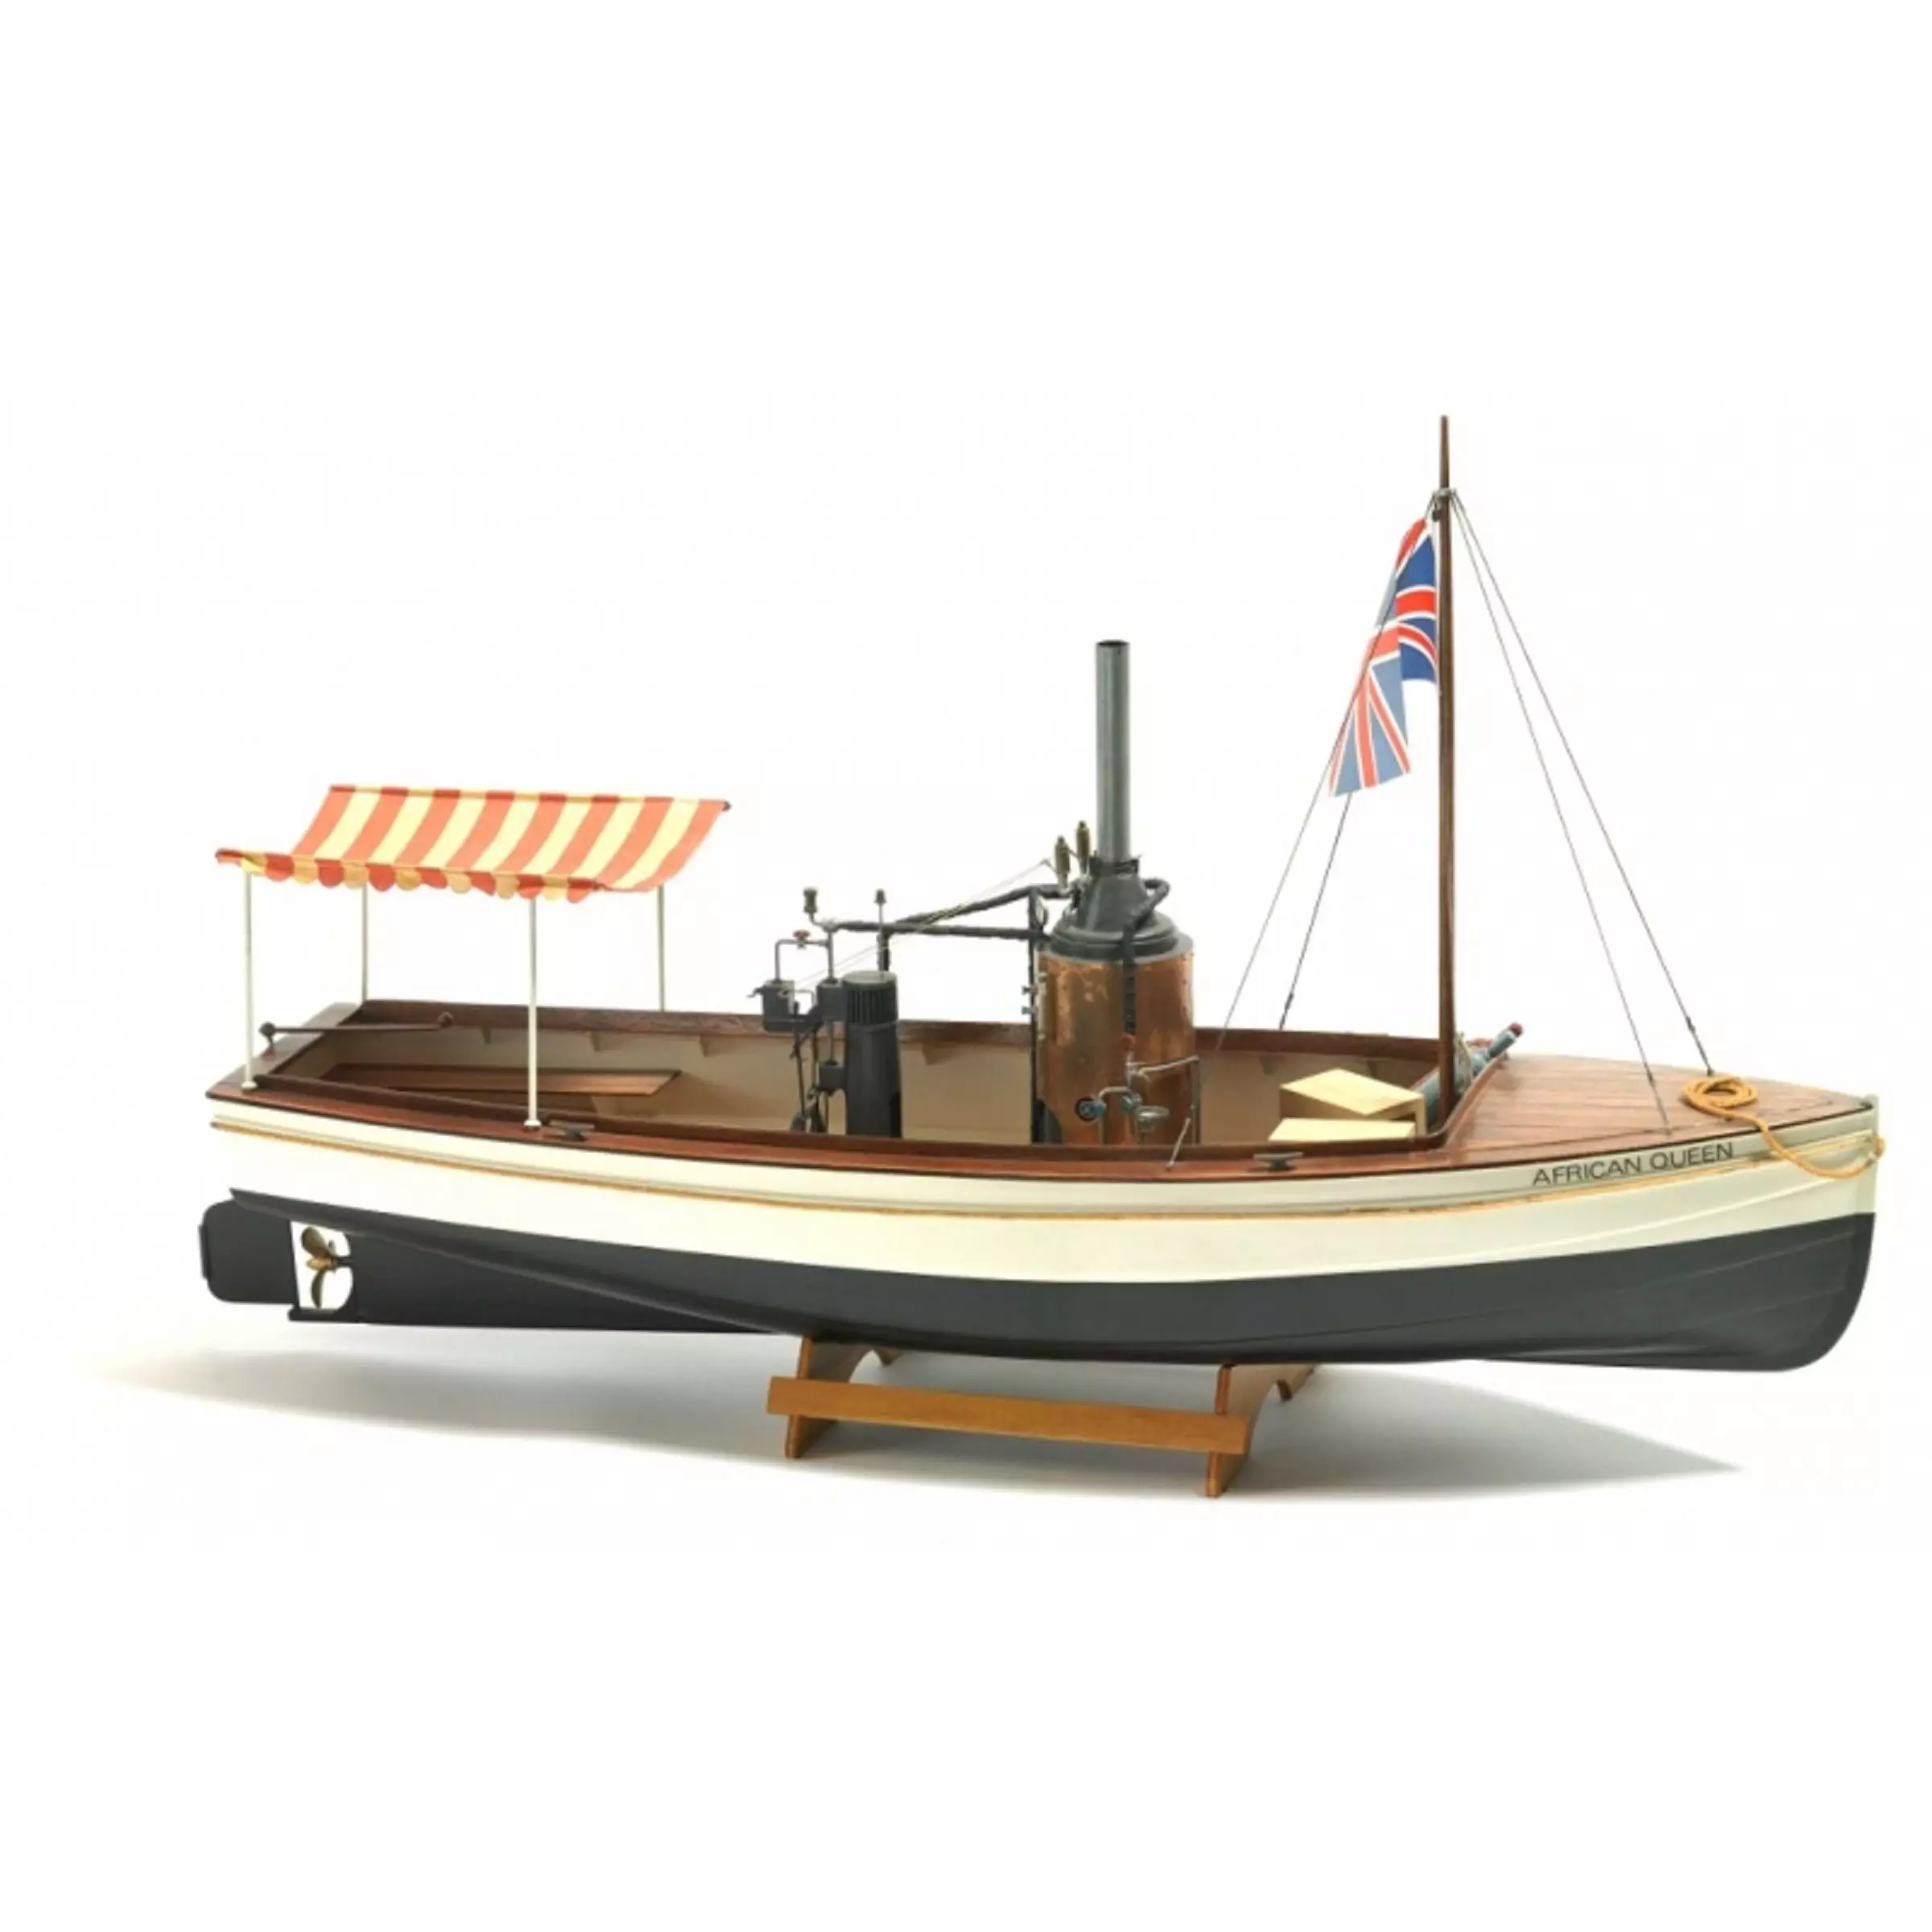 African Queen Model Boat Kit - Billing Boats (B588)